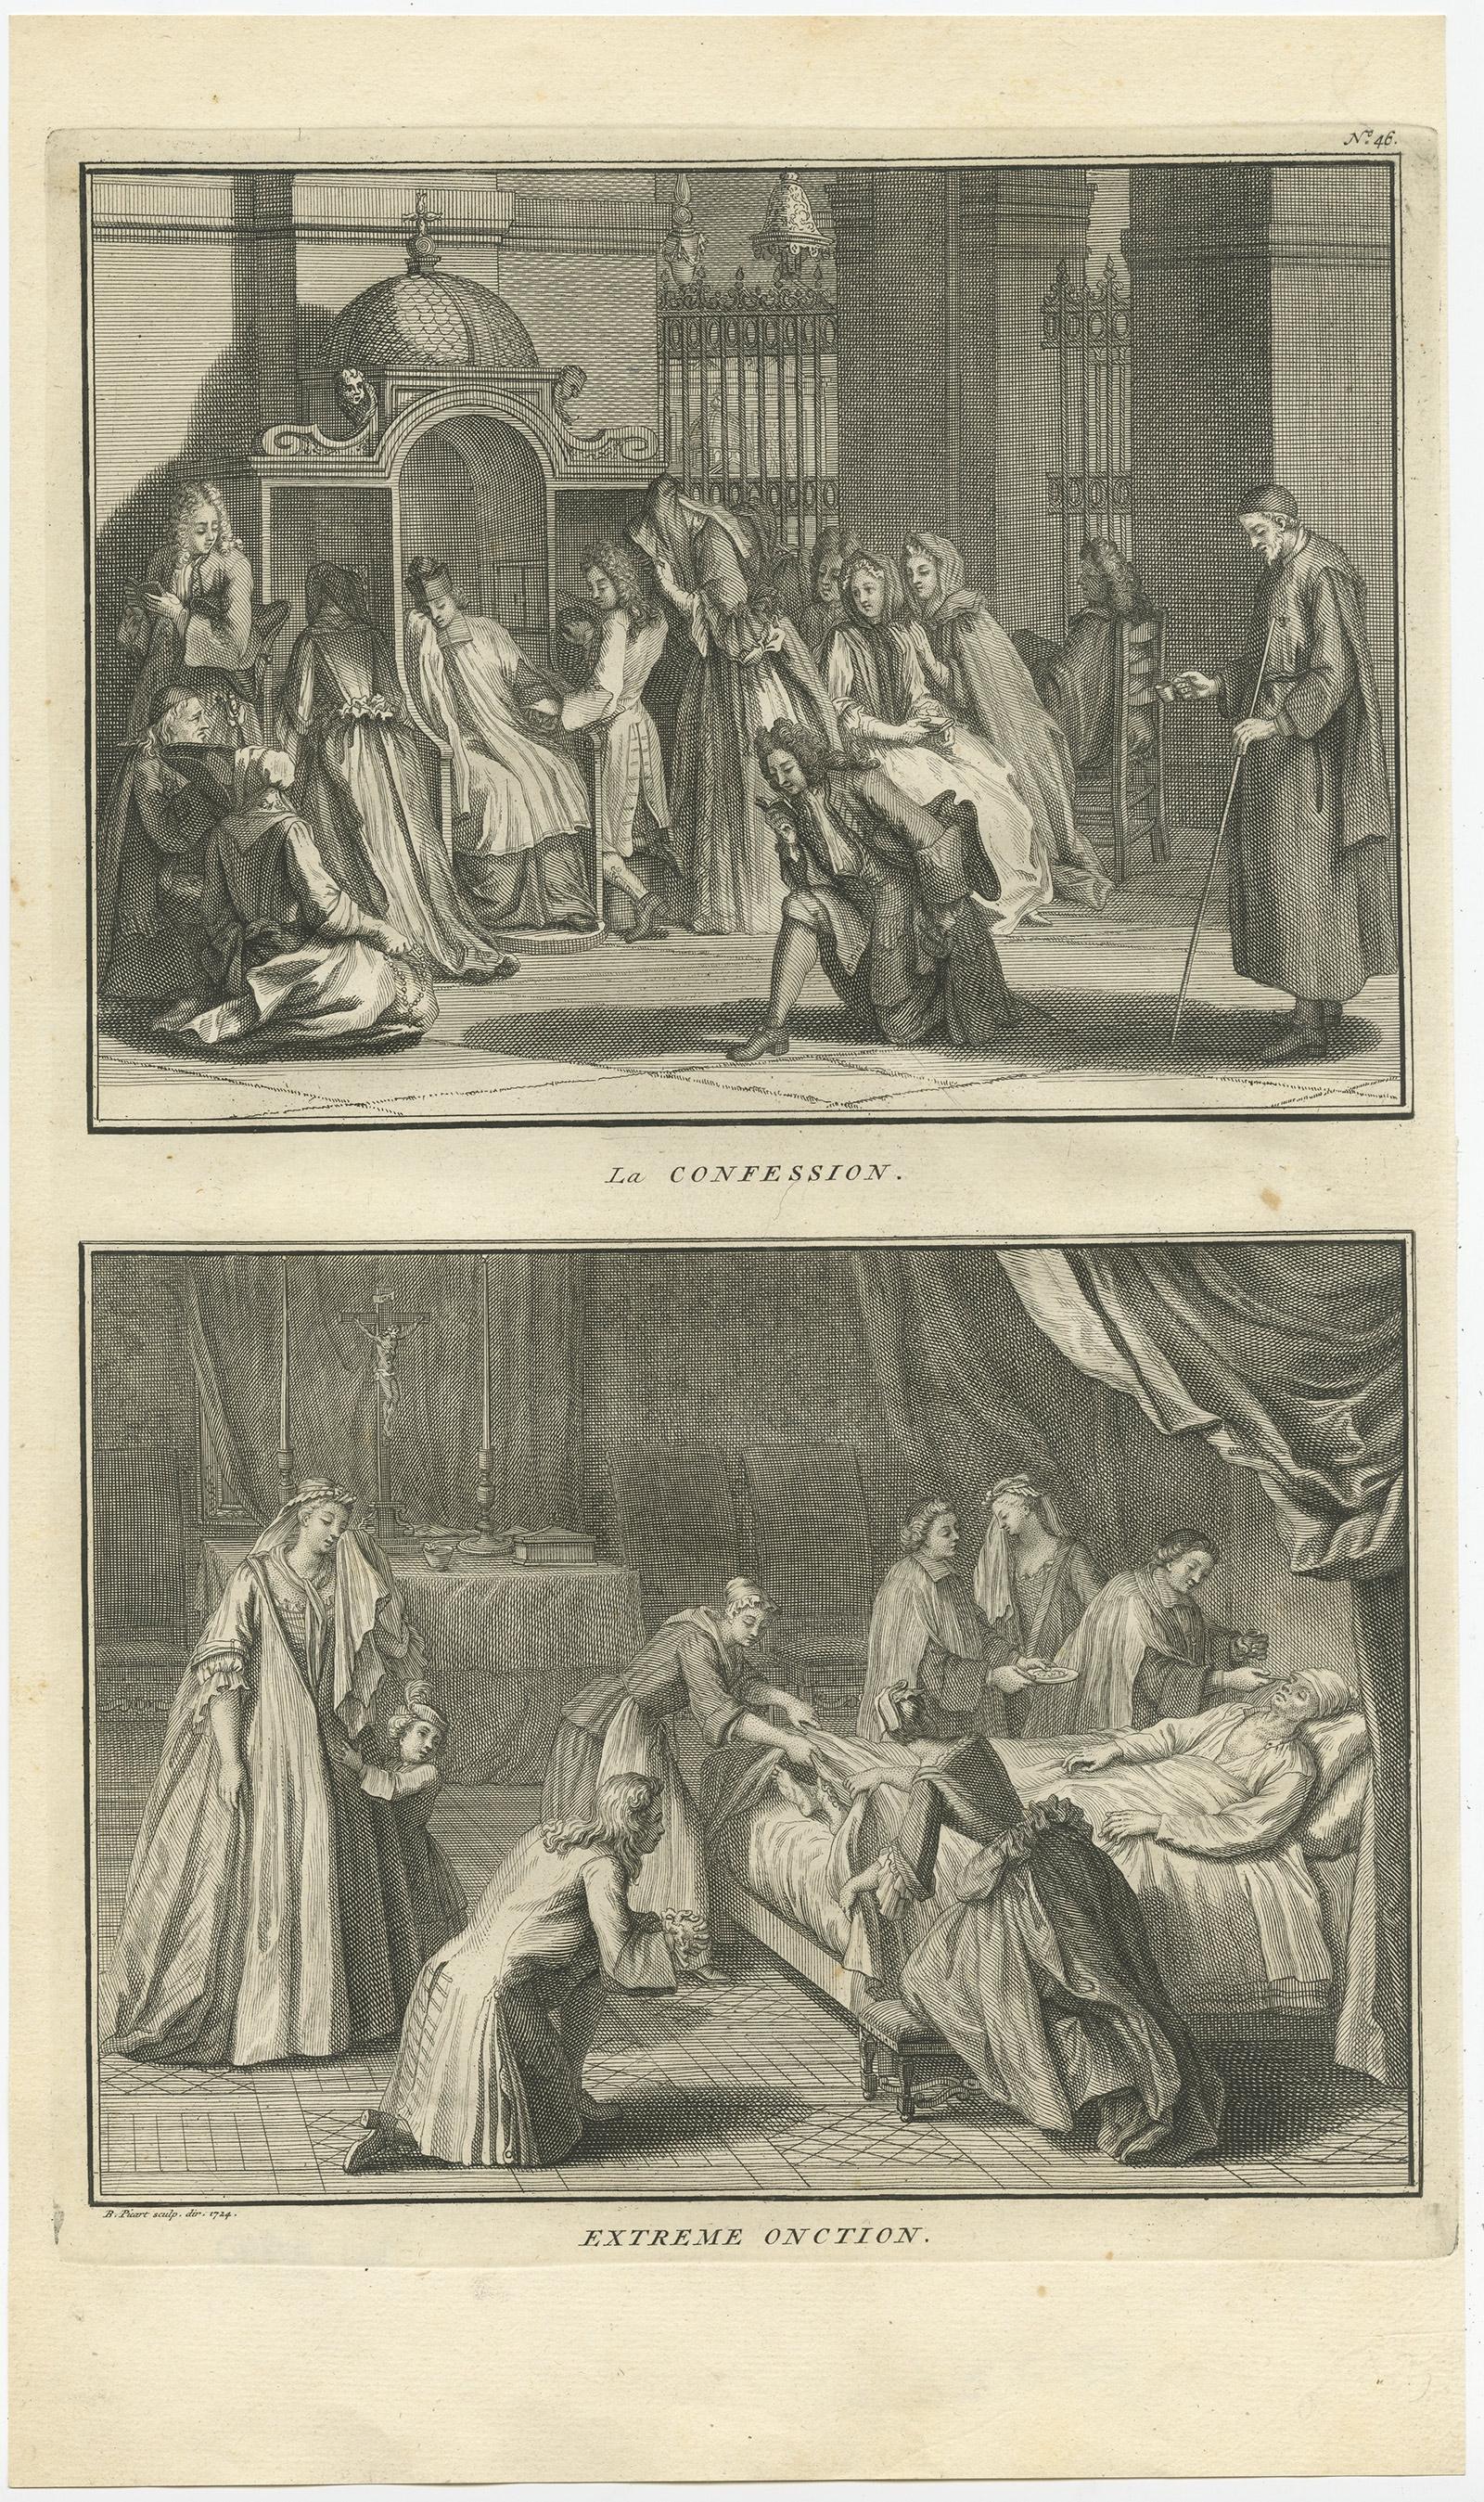 Zwei religiöse Bilder auf einem Blatt. Das obere Bild zeigt die Beichte, das untere Bild die Krankensalbung. Dieser Druck stammt aus 'Ceremonies et costumes Religieuses (..)'. 

Künstler und Graveure: Bernard Picart (1673-1733), ein französischer